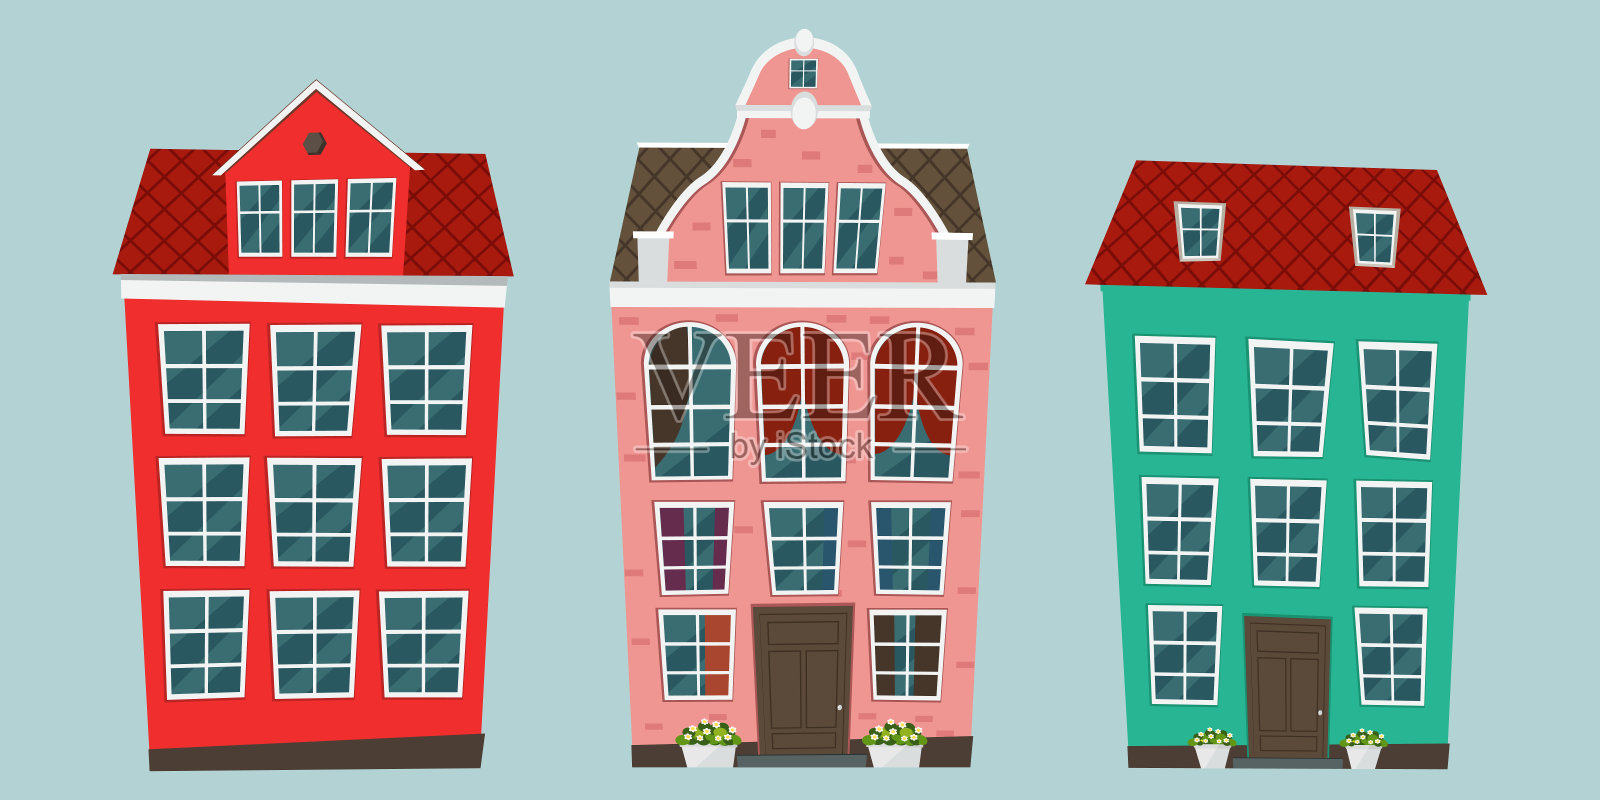 一套欧洲的彩色老房子插画图片素材